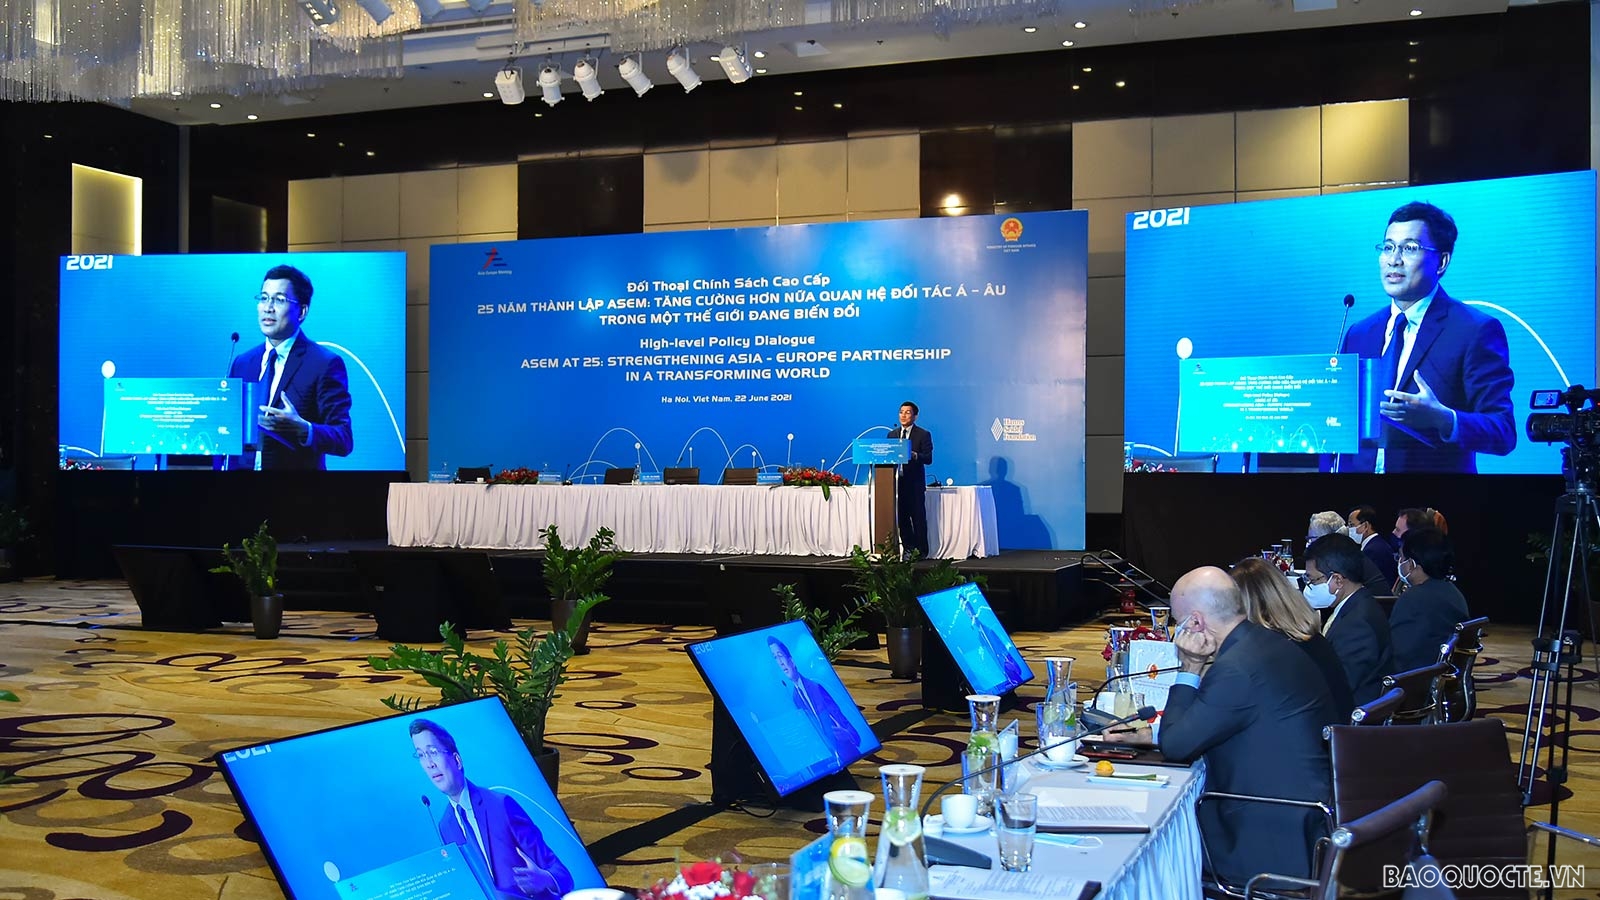 Kỷ niệm 25 năm thành lập ASEM: Khai mạc Đối thoại chính sách cao cấp Diễn đàn hợp tác Á-Âu tại Hà Nội